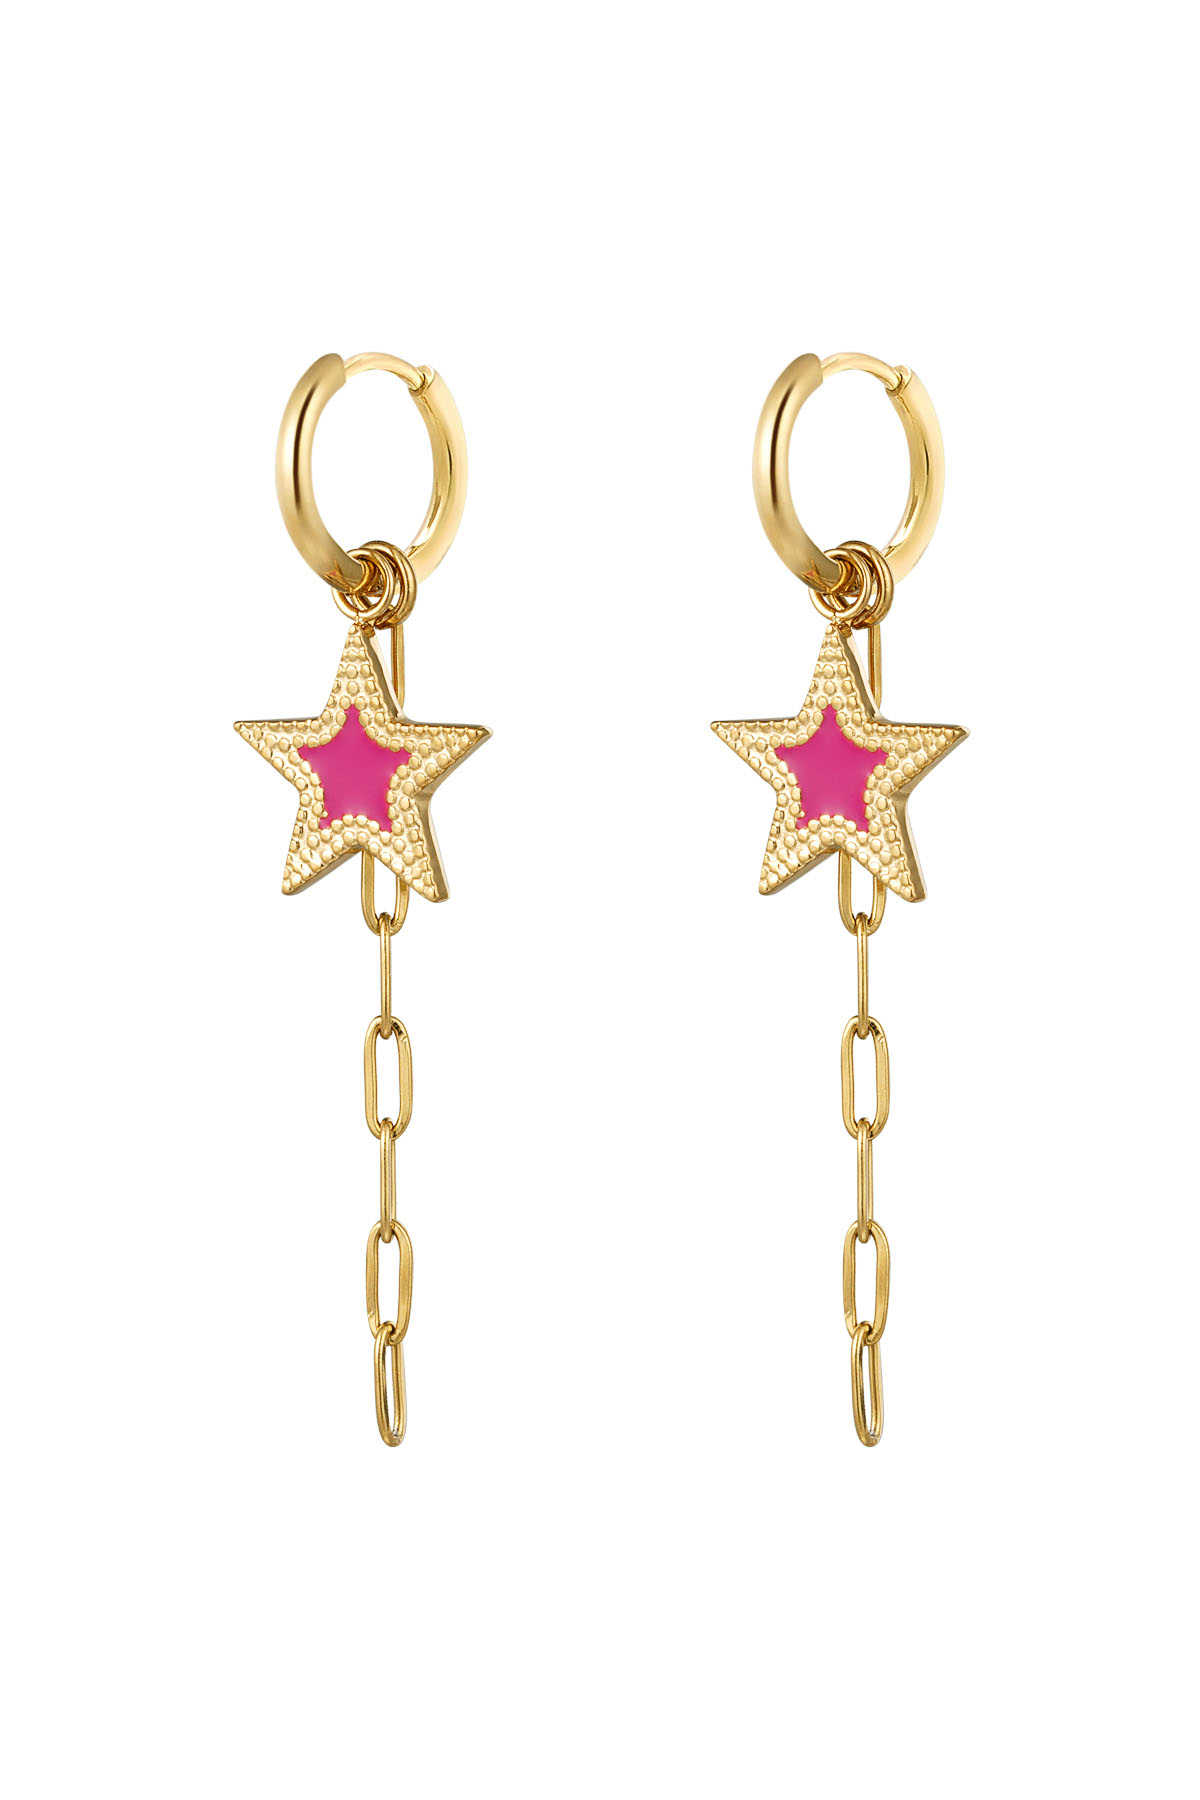 Ohrringe mit Stern und Halskette rosa - gold